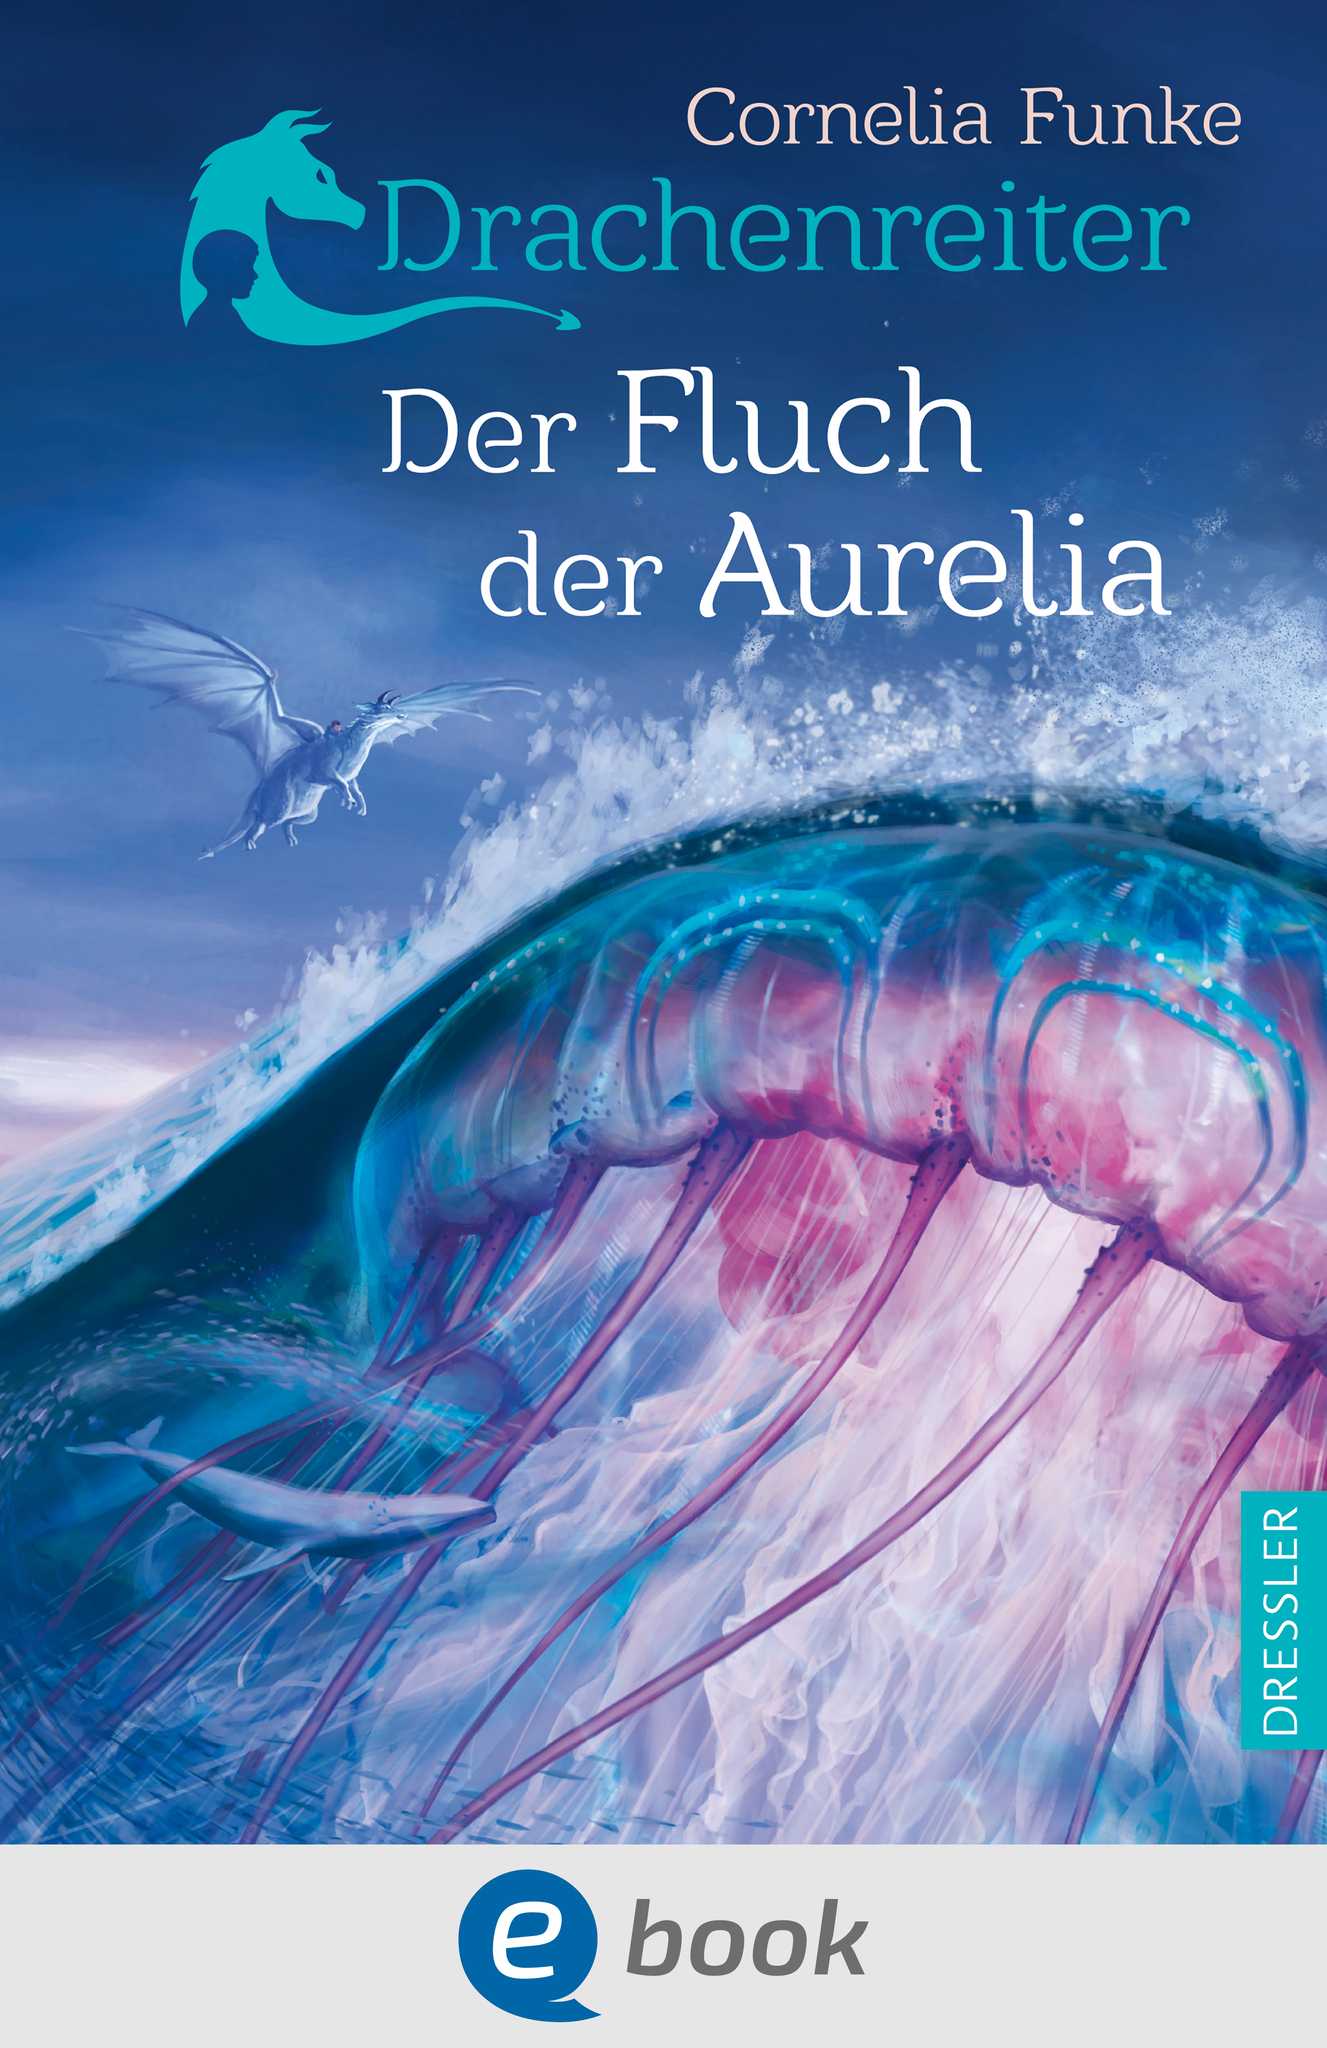 Book cover for Drachenreiter 3. Der Fluch der Aurelia